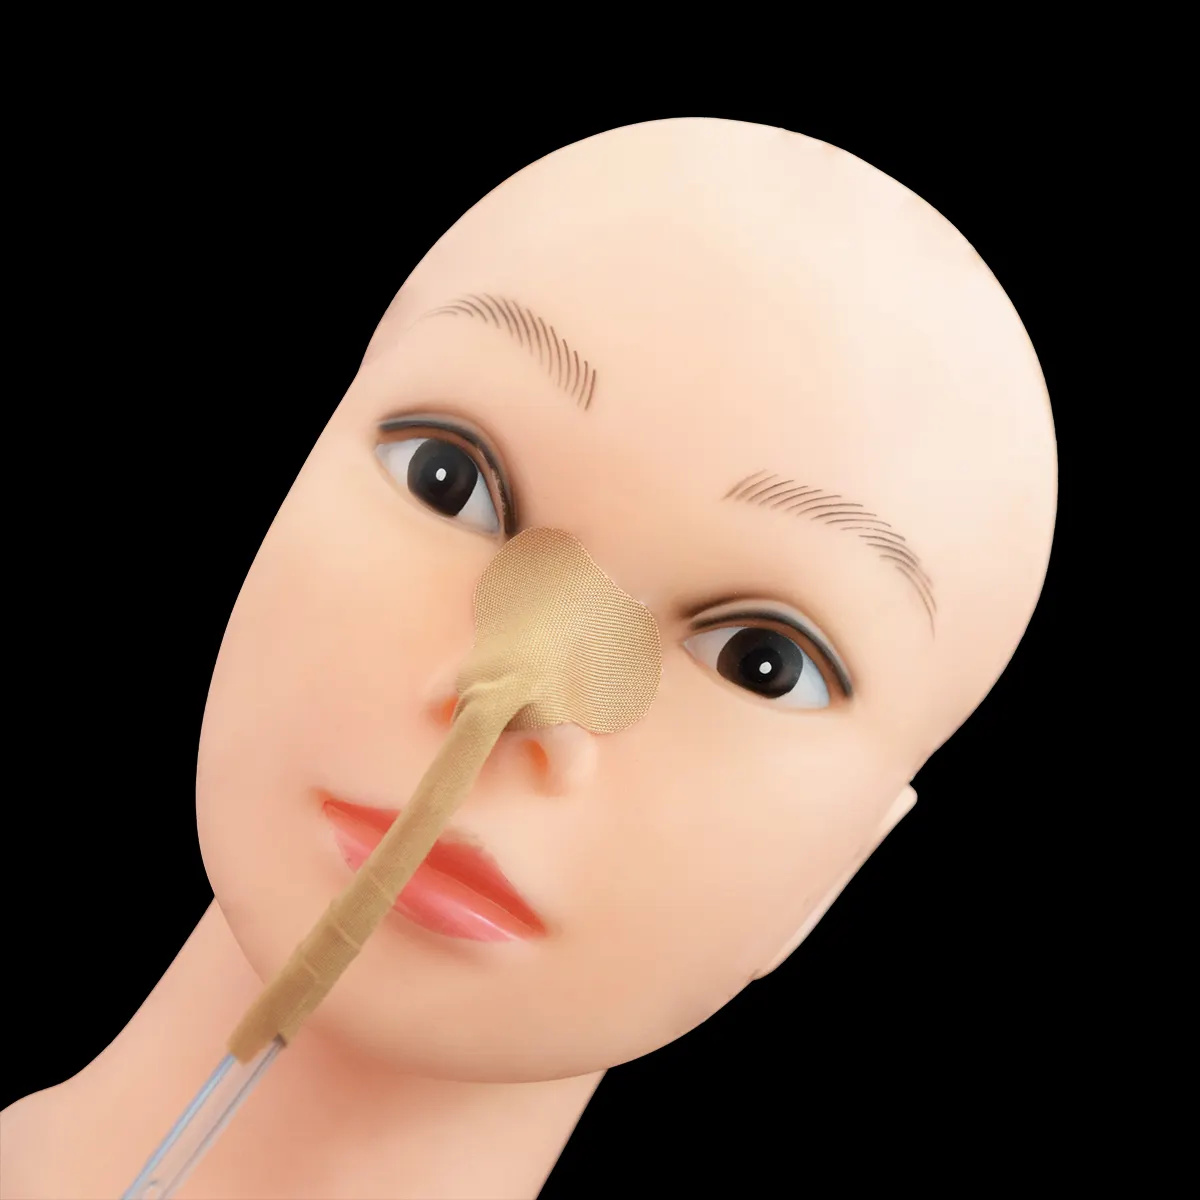 鼻管ホルダー鼻胃栄養管ファスナーカテーテル固定テープステッカーホームケアクリニック用看護用品